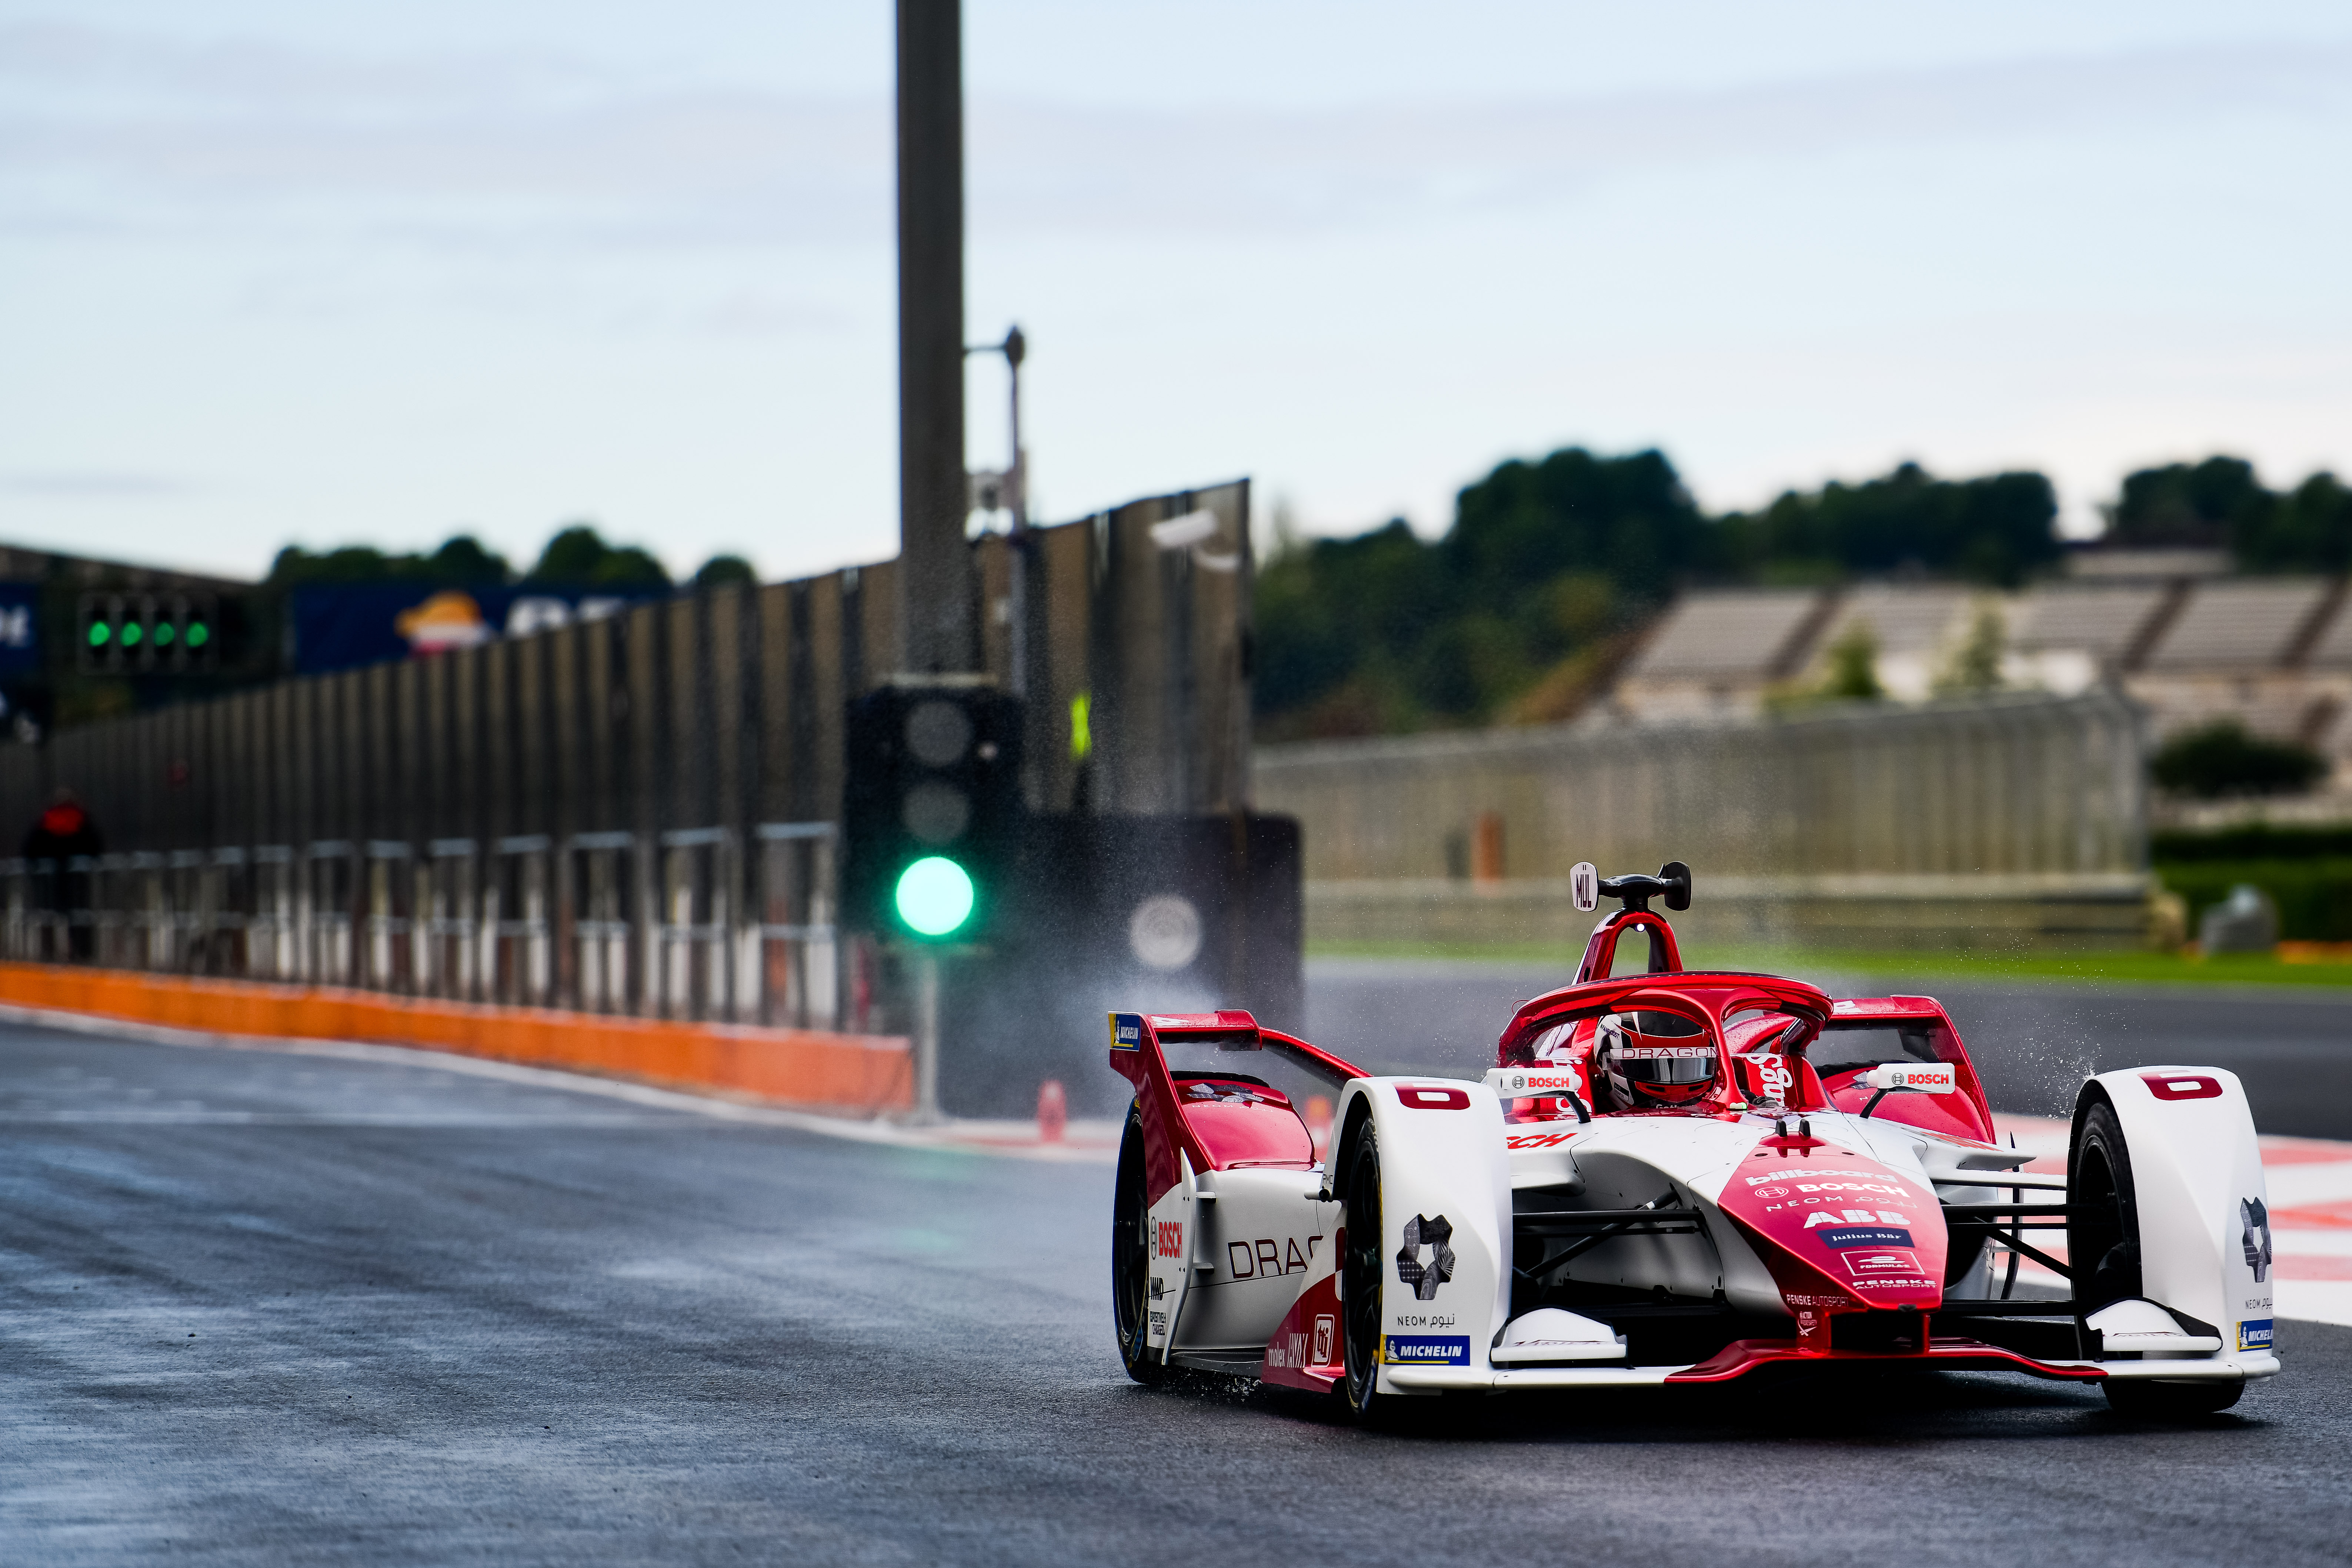 Motorsport pod proudem: Bosch a DRAGON / PENSKE AUTOSPORT se dohodly na dlouhodobém partnerství ve Formuli E